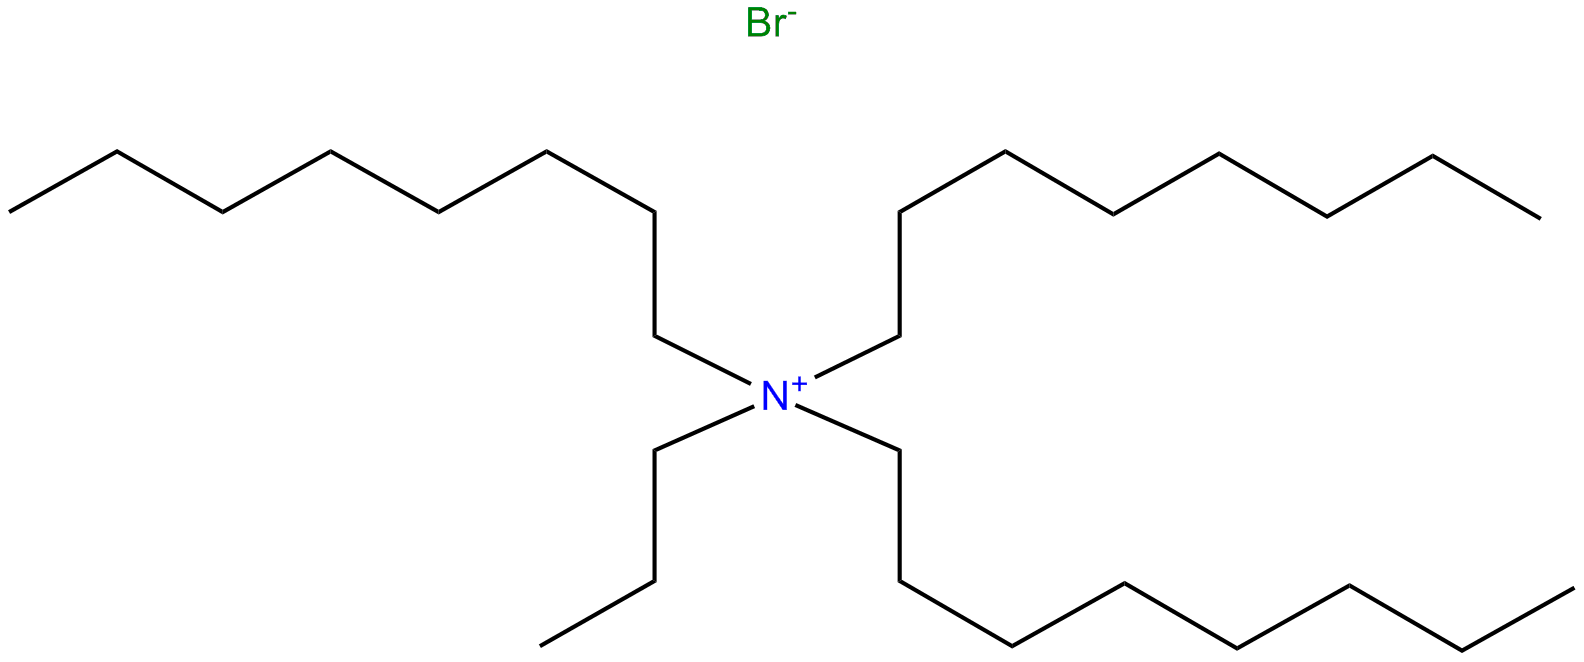 Image of trioctylpropylammonium bromide